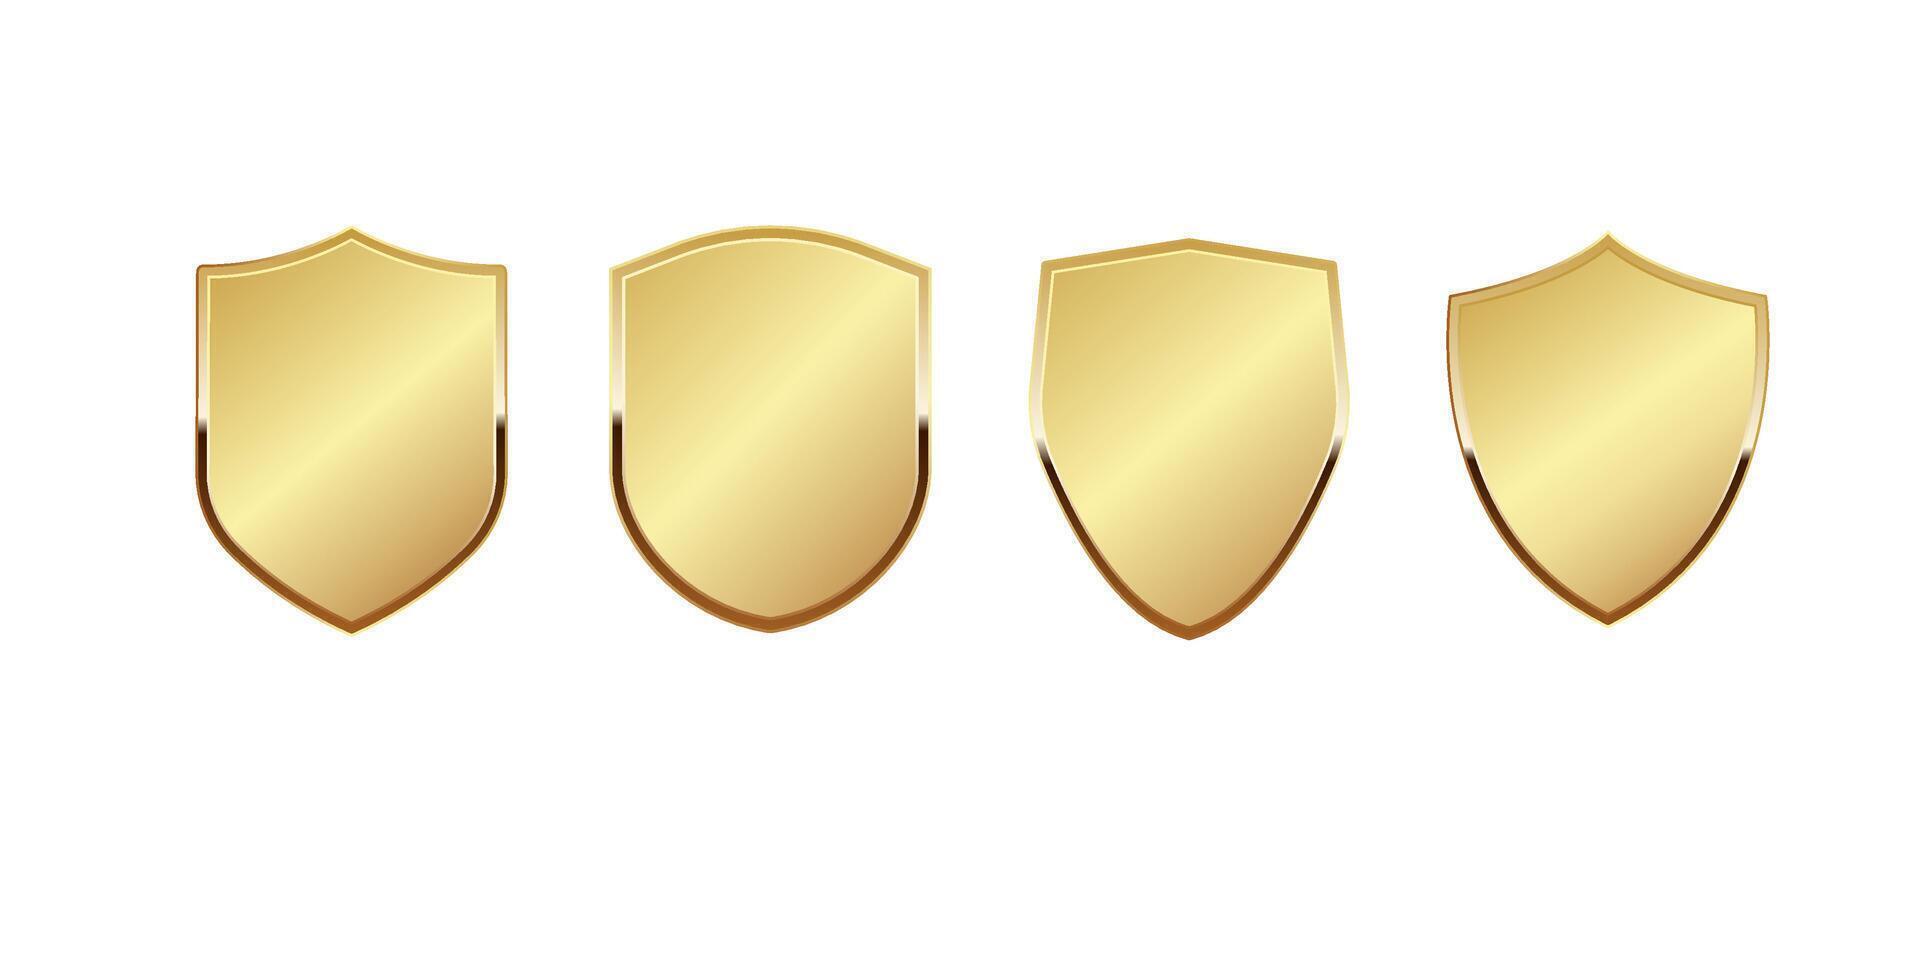 guld skydda vektor illustration. realistisk isolerat gyllene arsenal trofén med metall täcka, 3d lyx säkerhet skydd emblem, årgång tom skinande kunglig tilldela.